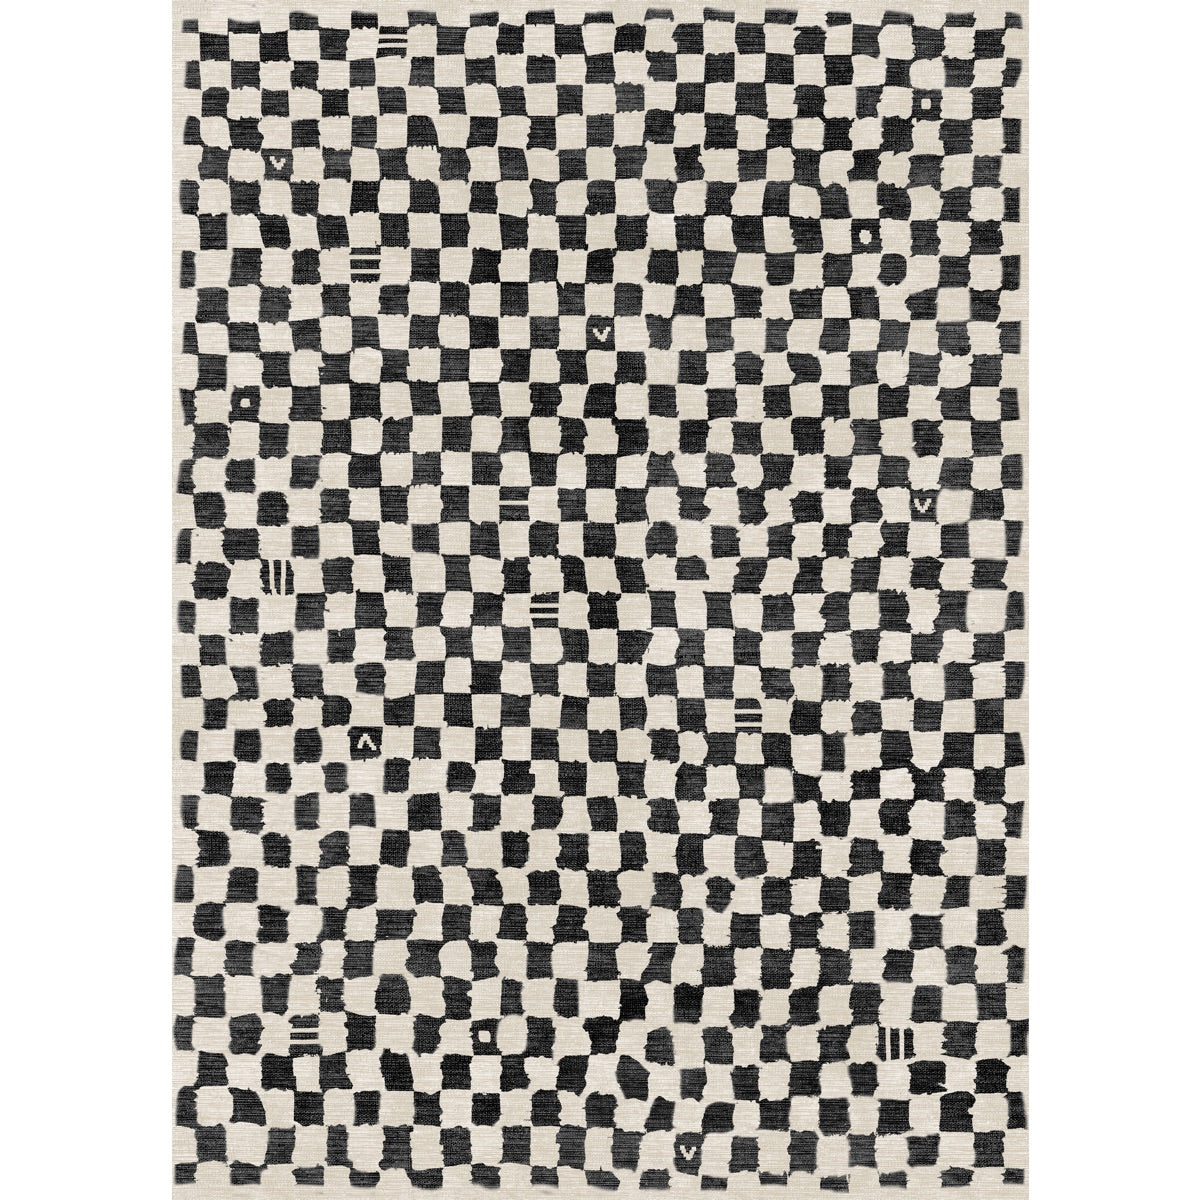 Metro Checkered Black & White Rug